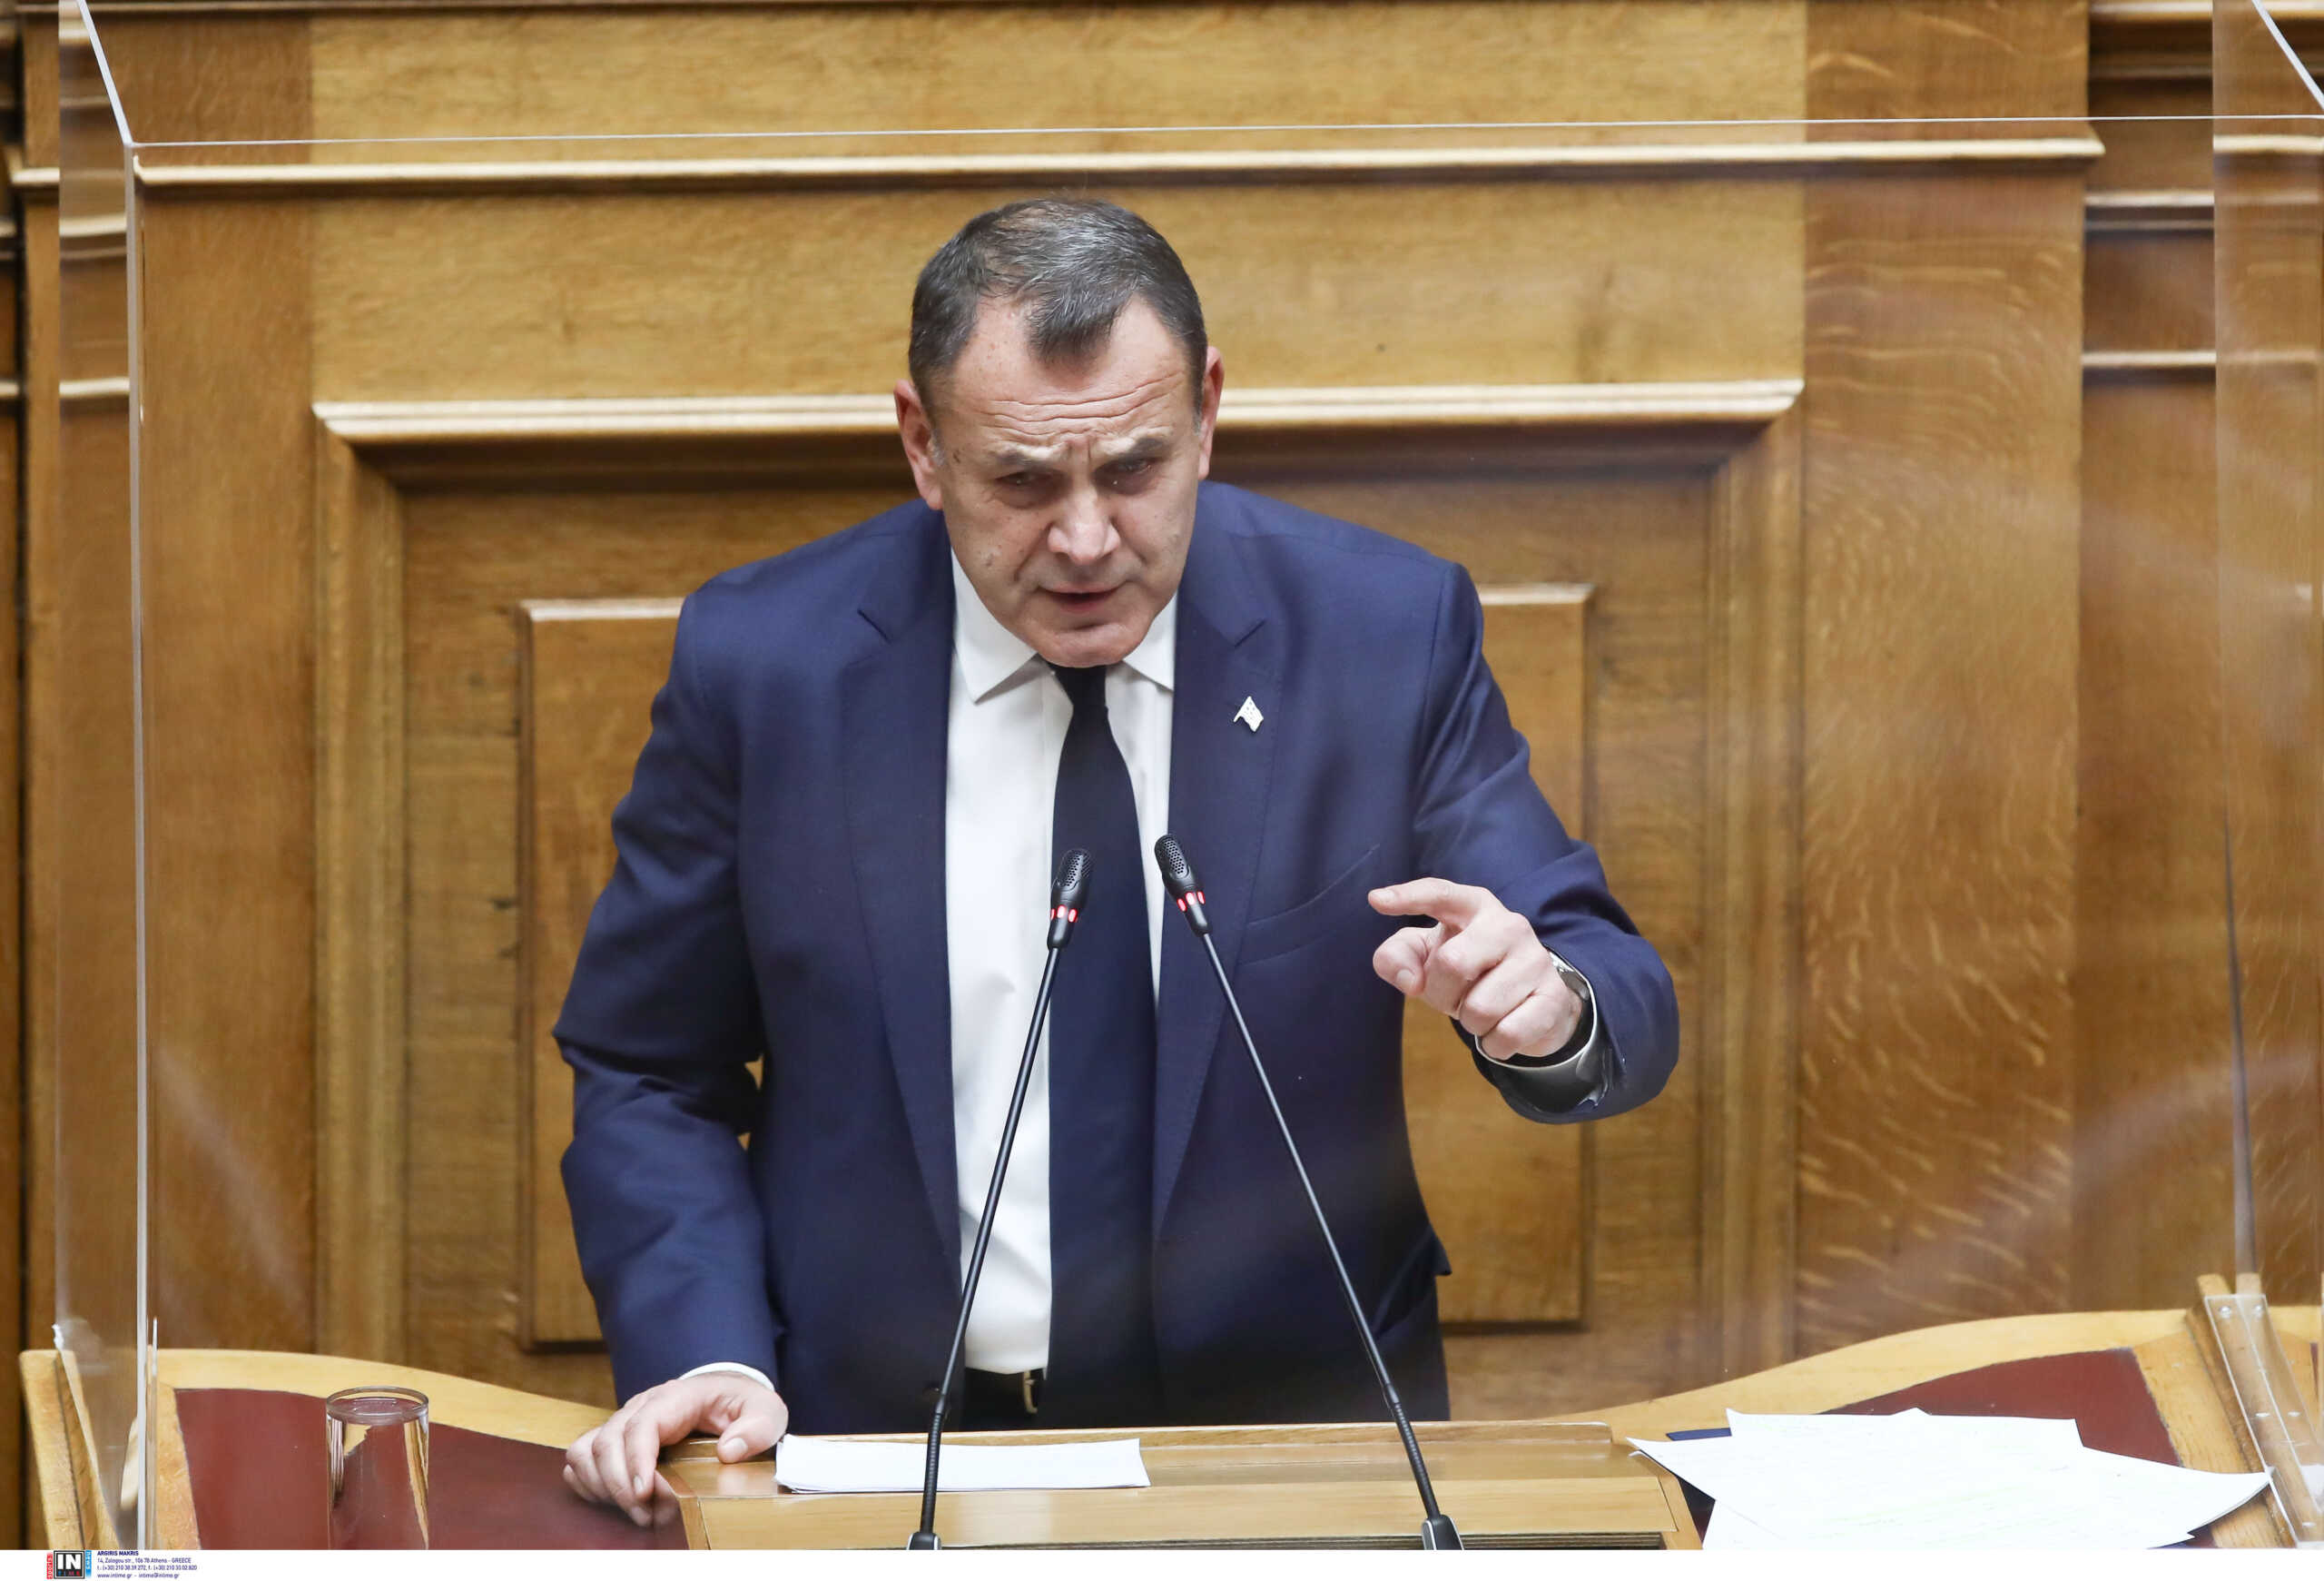 Πρόταση μομφής – Νίκος Παναγιωτόπουλος: Αφήστε τις Ένοπλες Δυνάμεις έξω από την πολιτική αντιπαράθεση